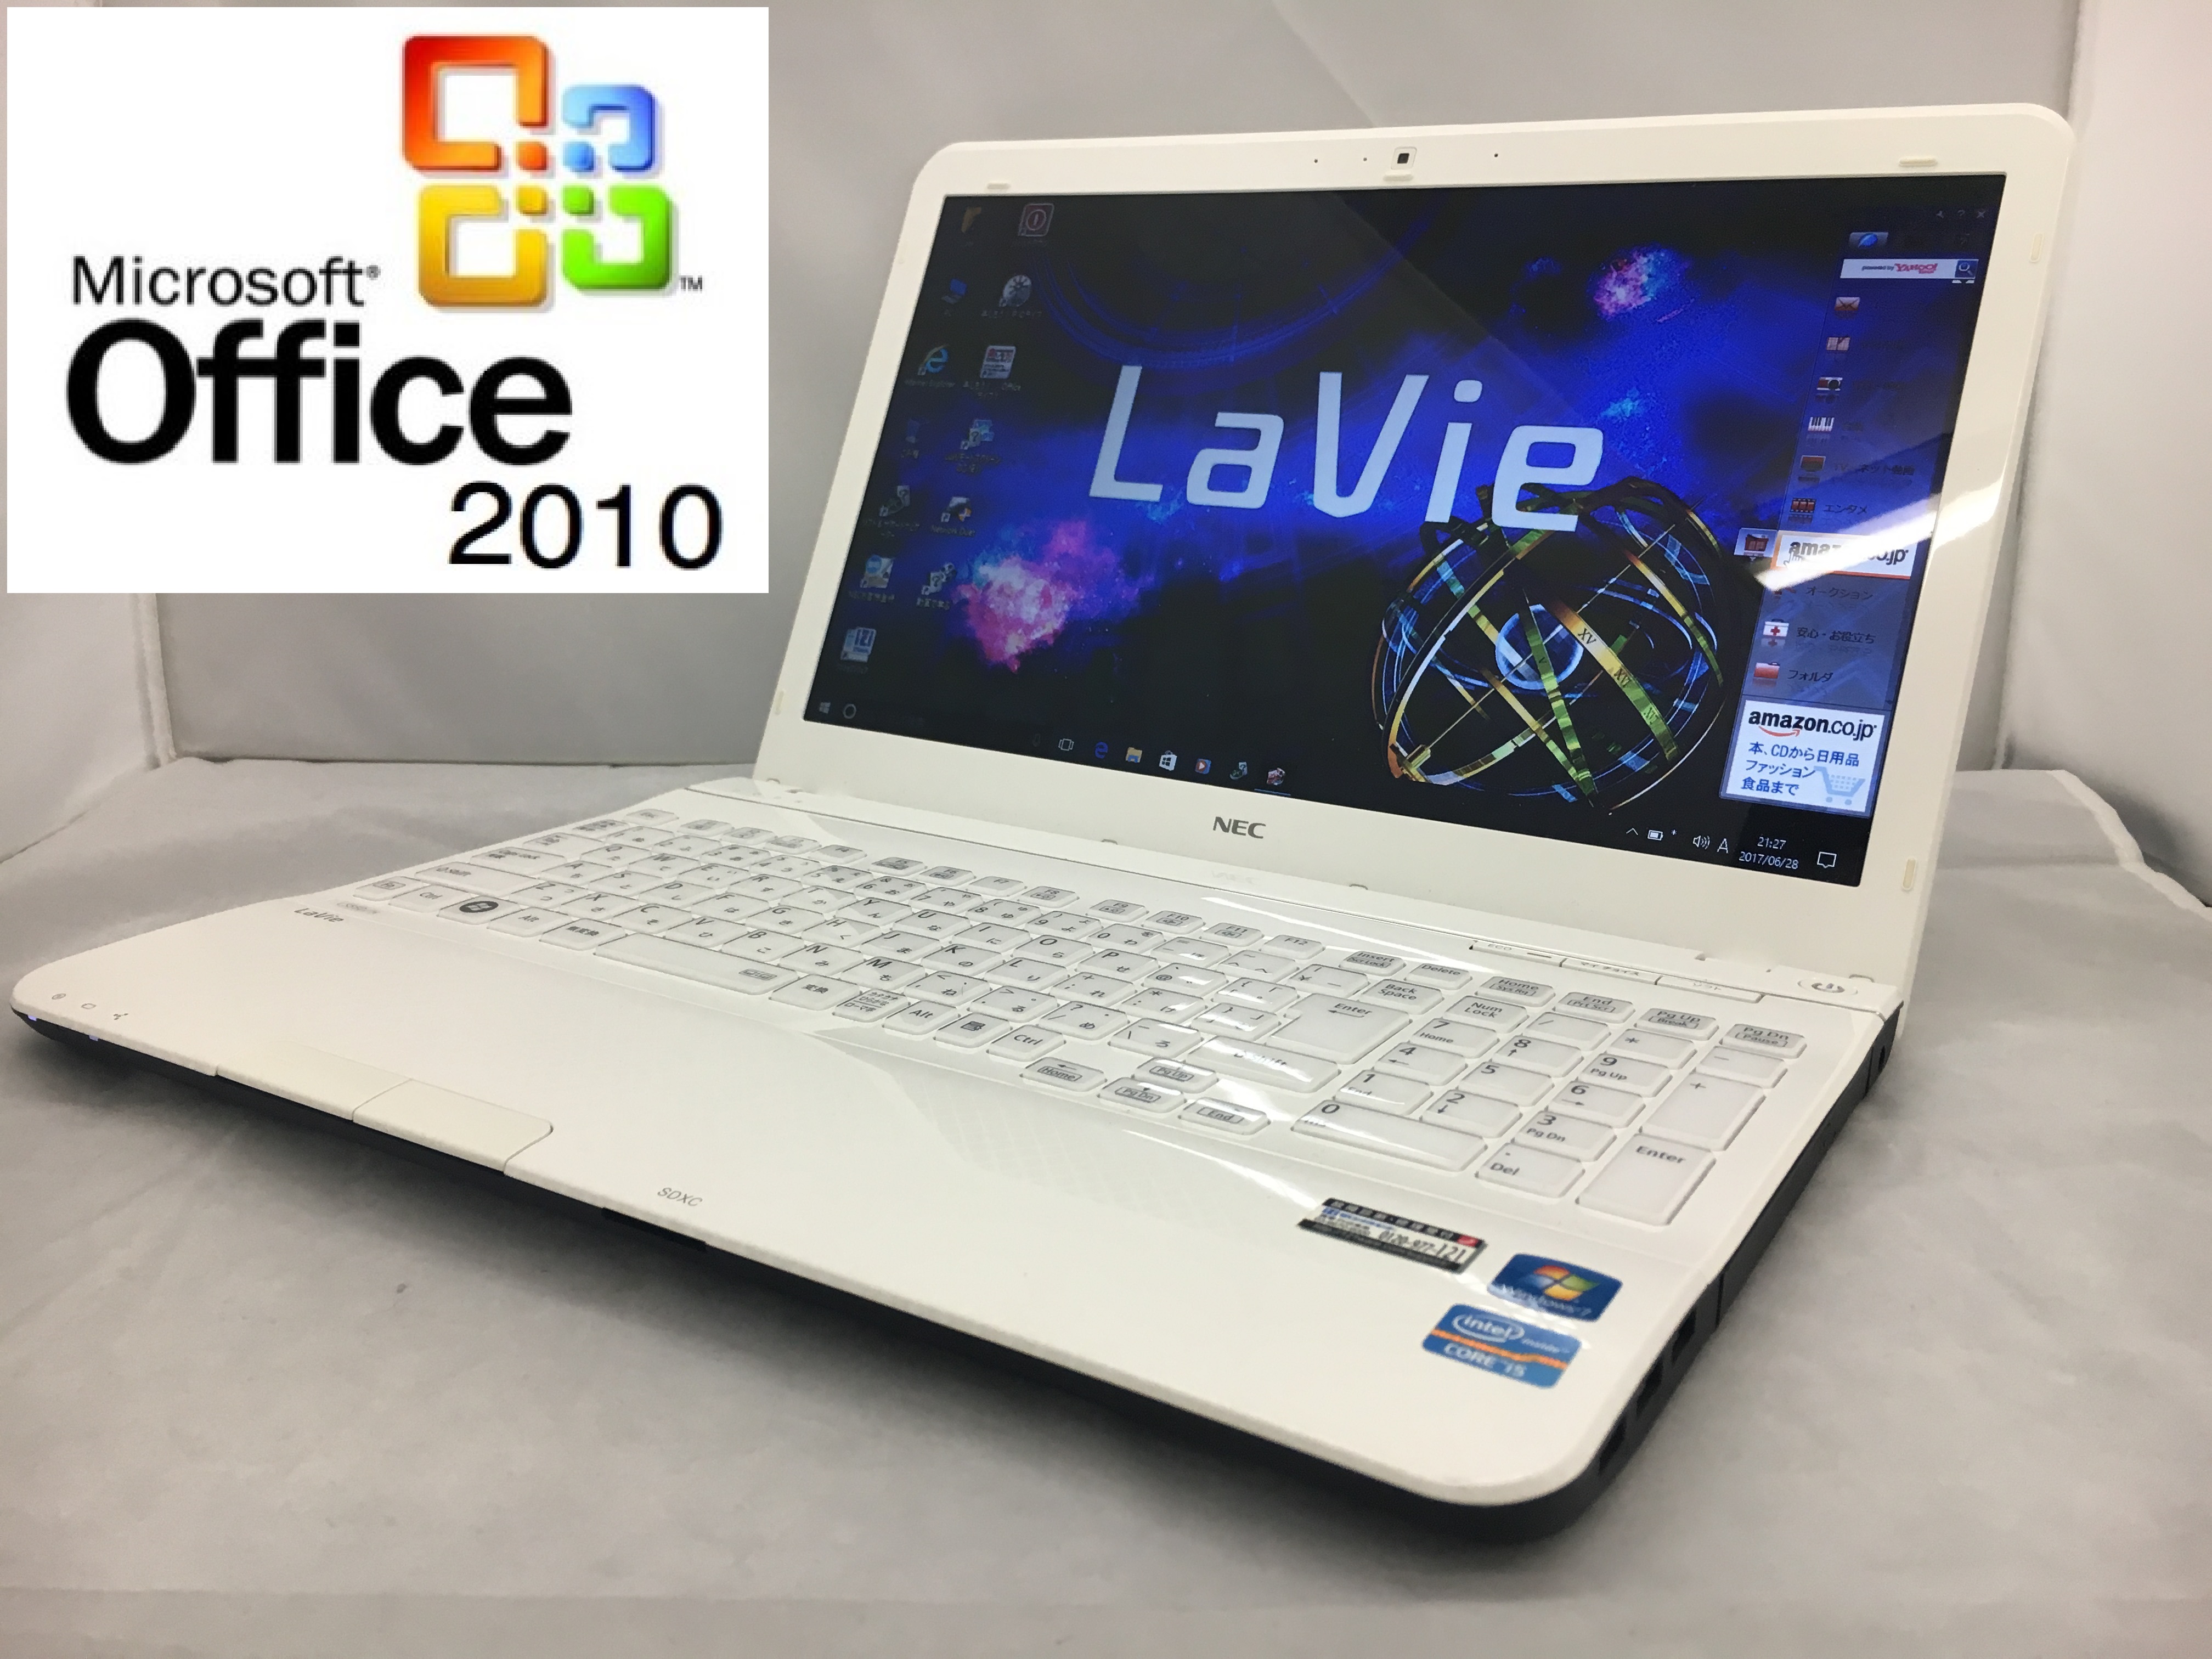 【ジャンク】Lavie PC-LS550ES2KS i5/2G/Blu-ray